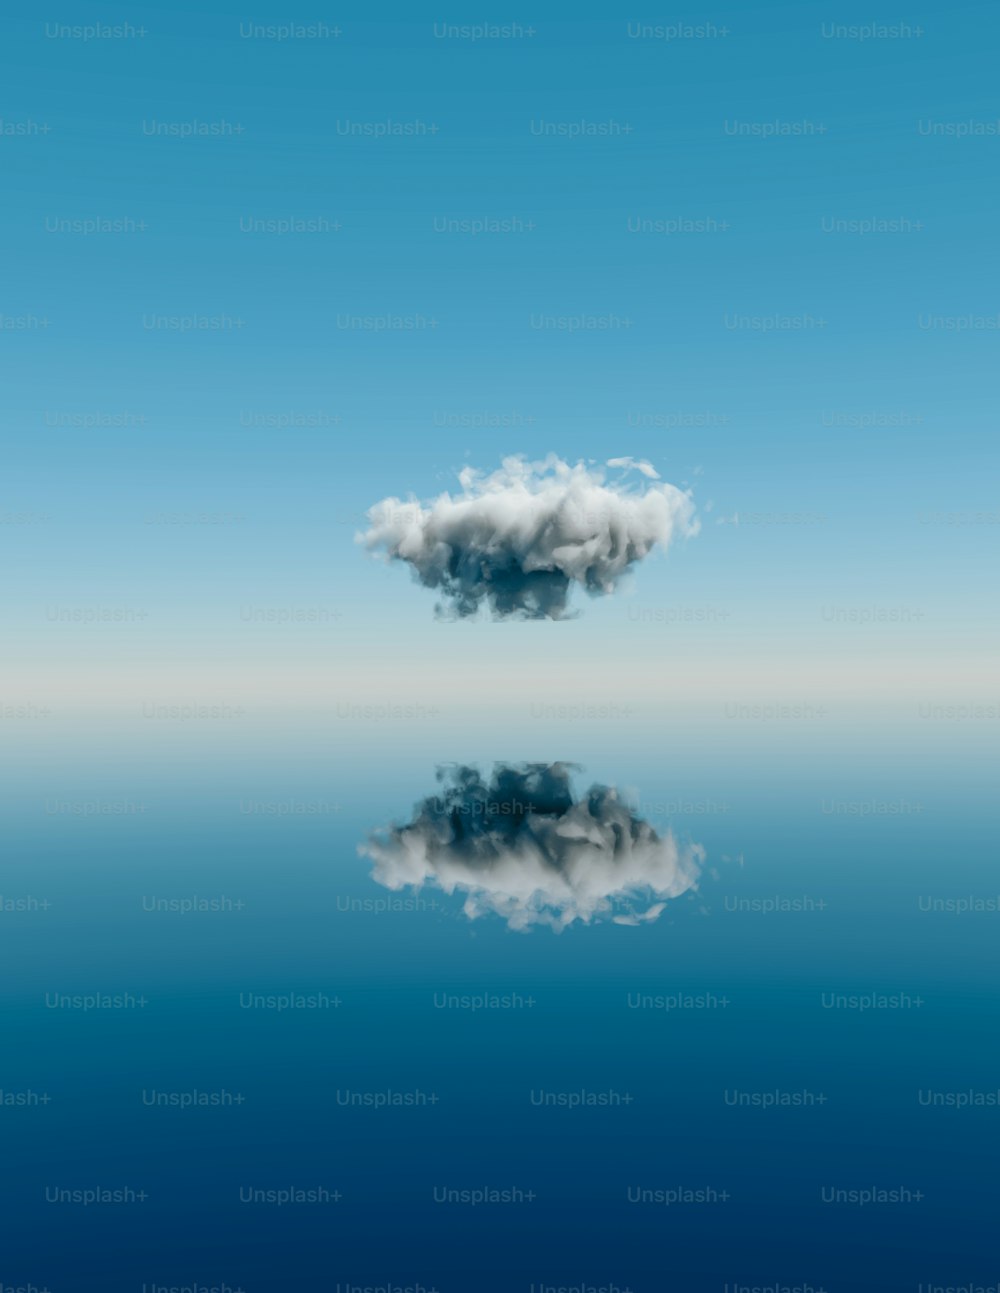 물 위에 하늘에 떠 있는 구름